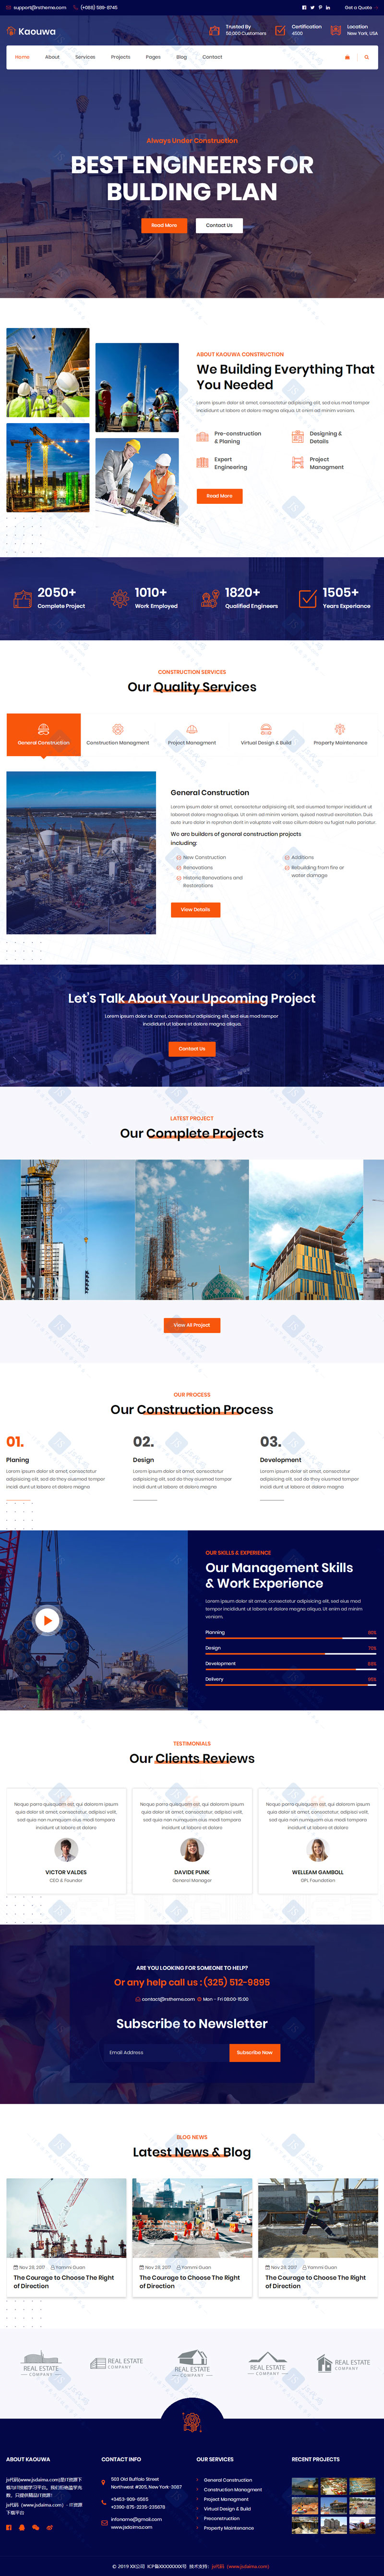 橙色宽屏大气响应式建筑设计施工工程集团公司企业网站模板